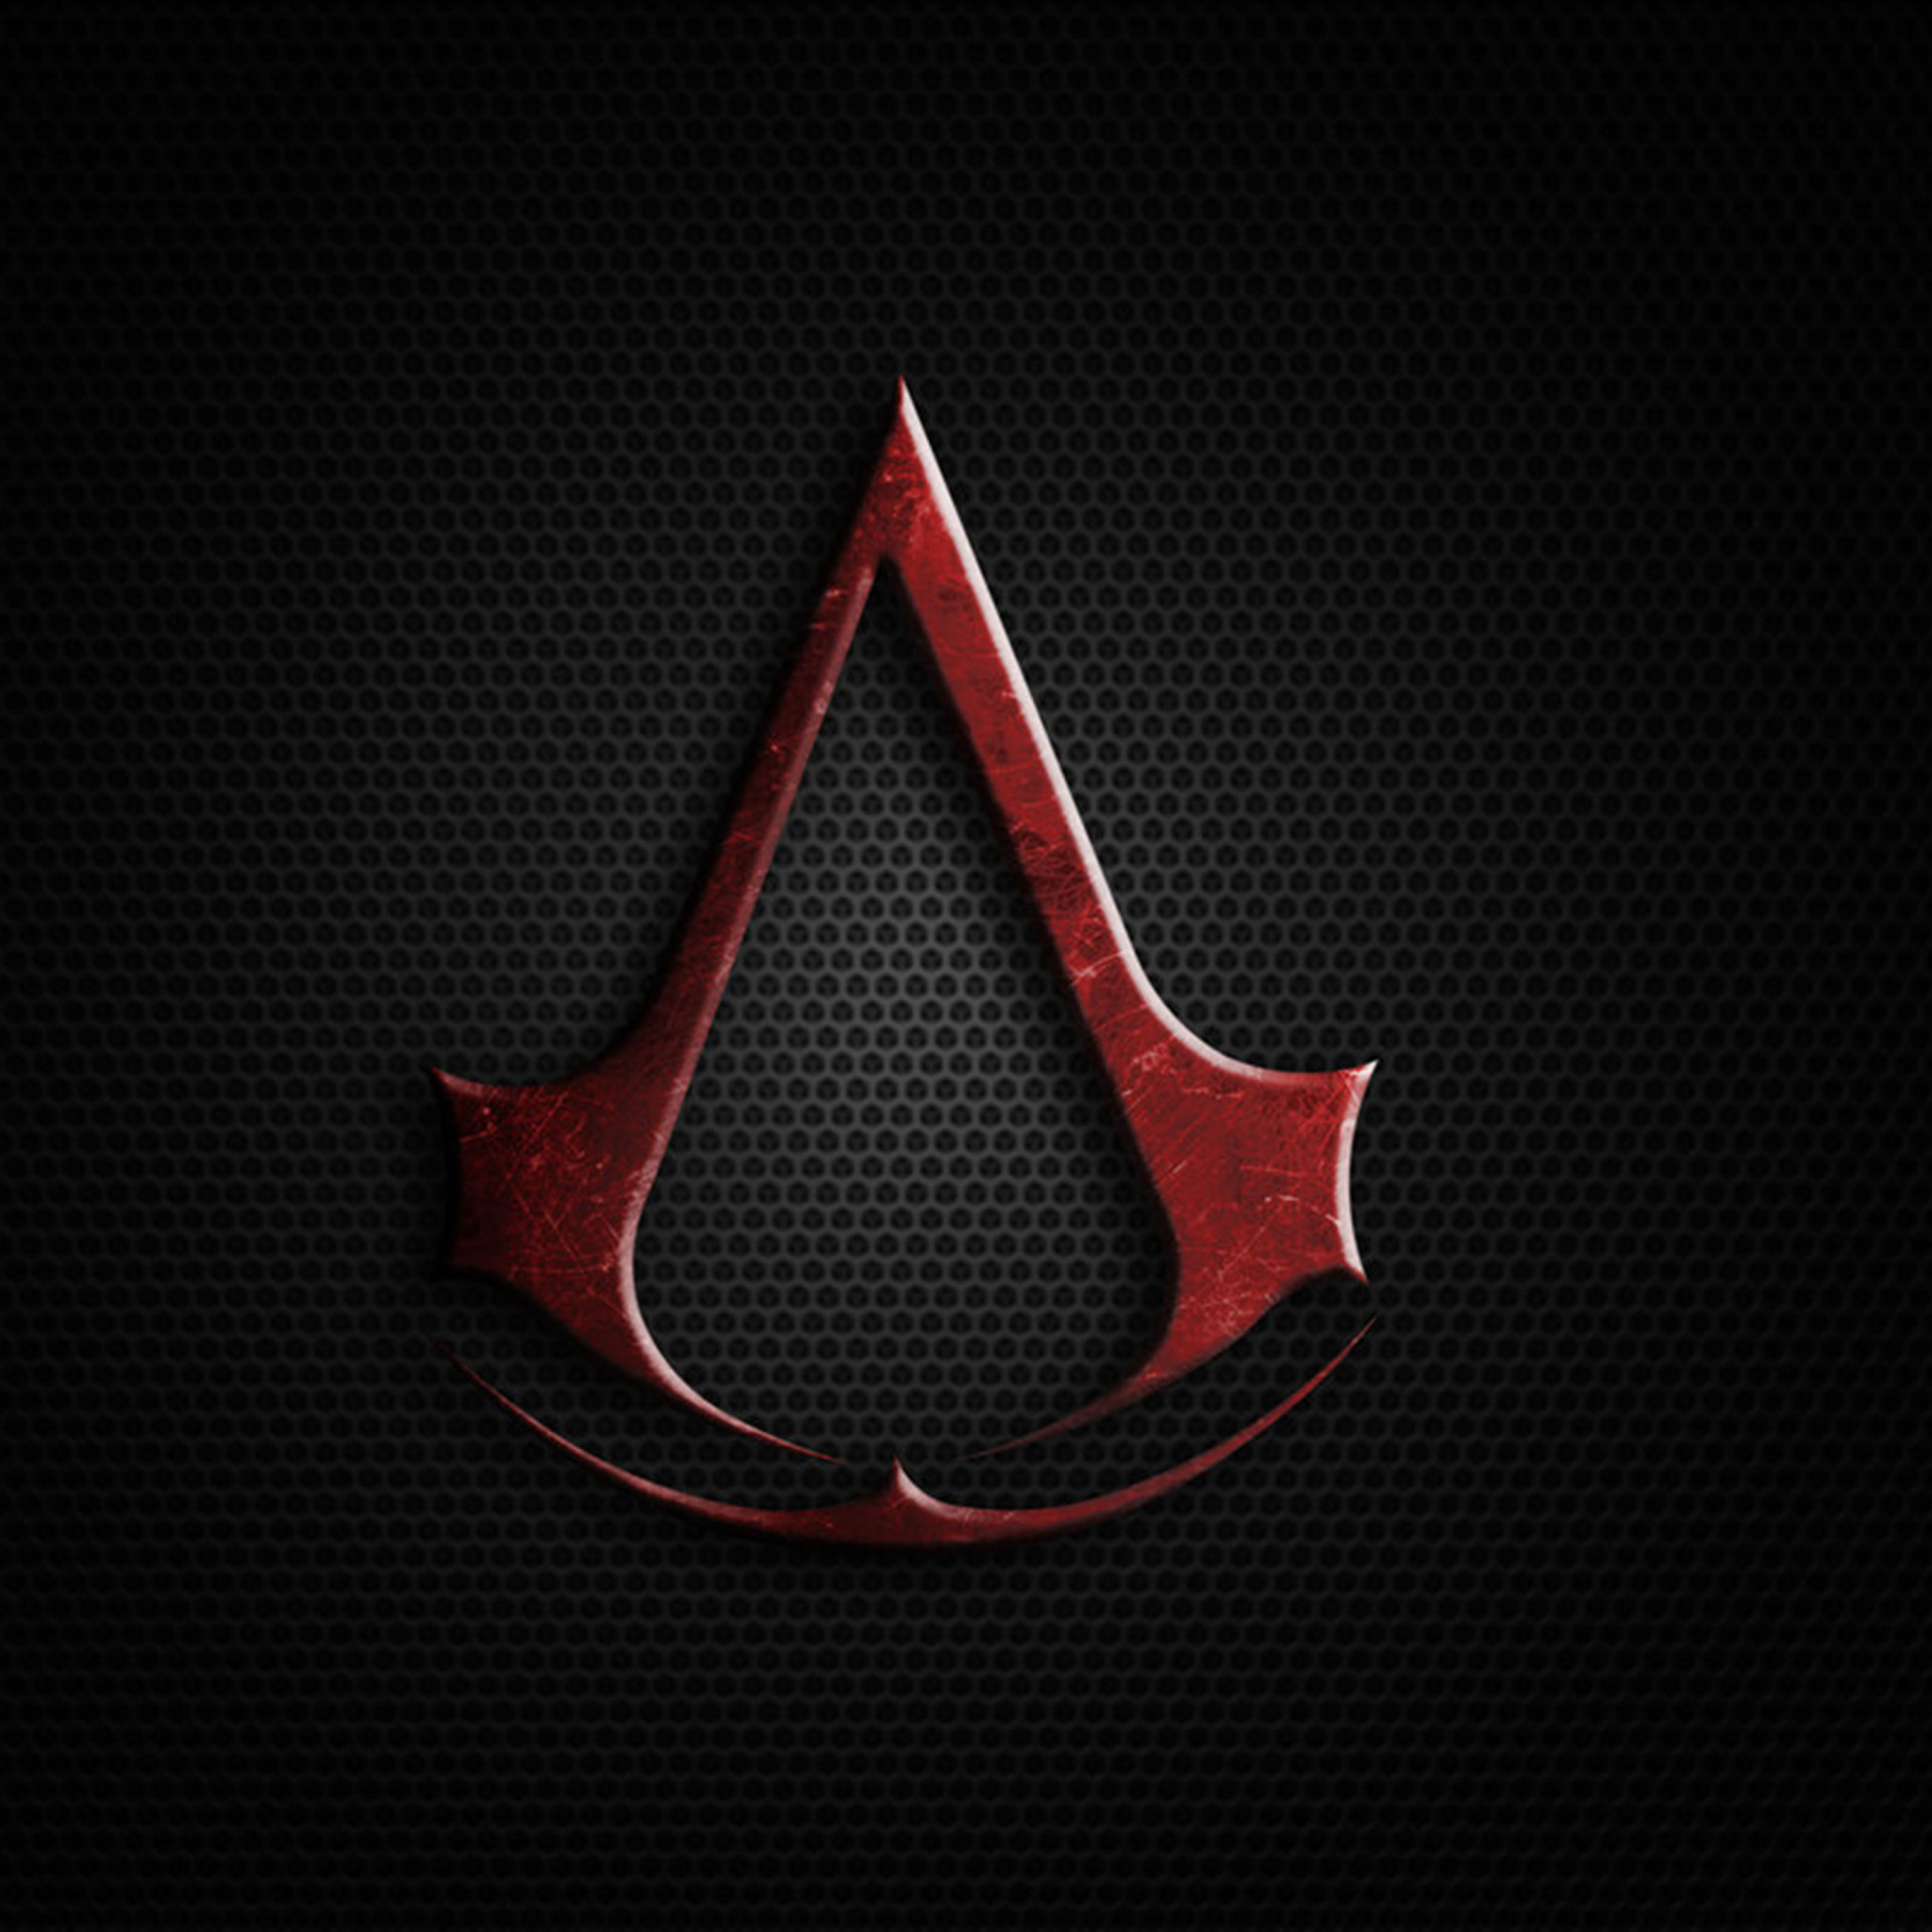 Sfondi Assassins Creed 2048x2048